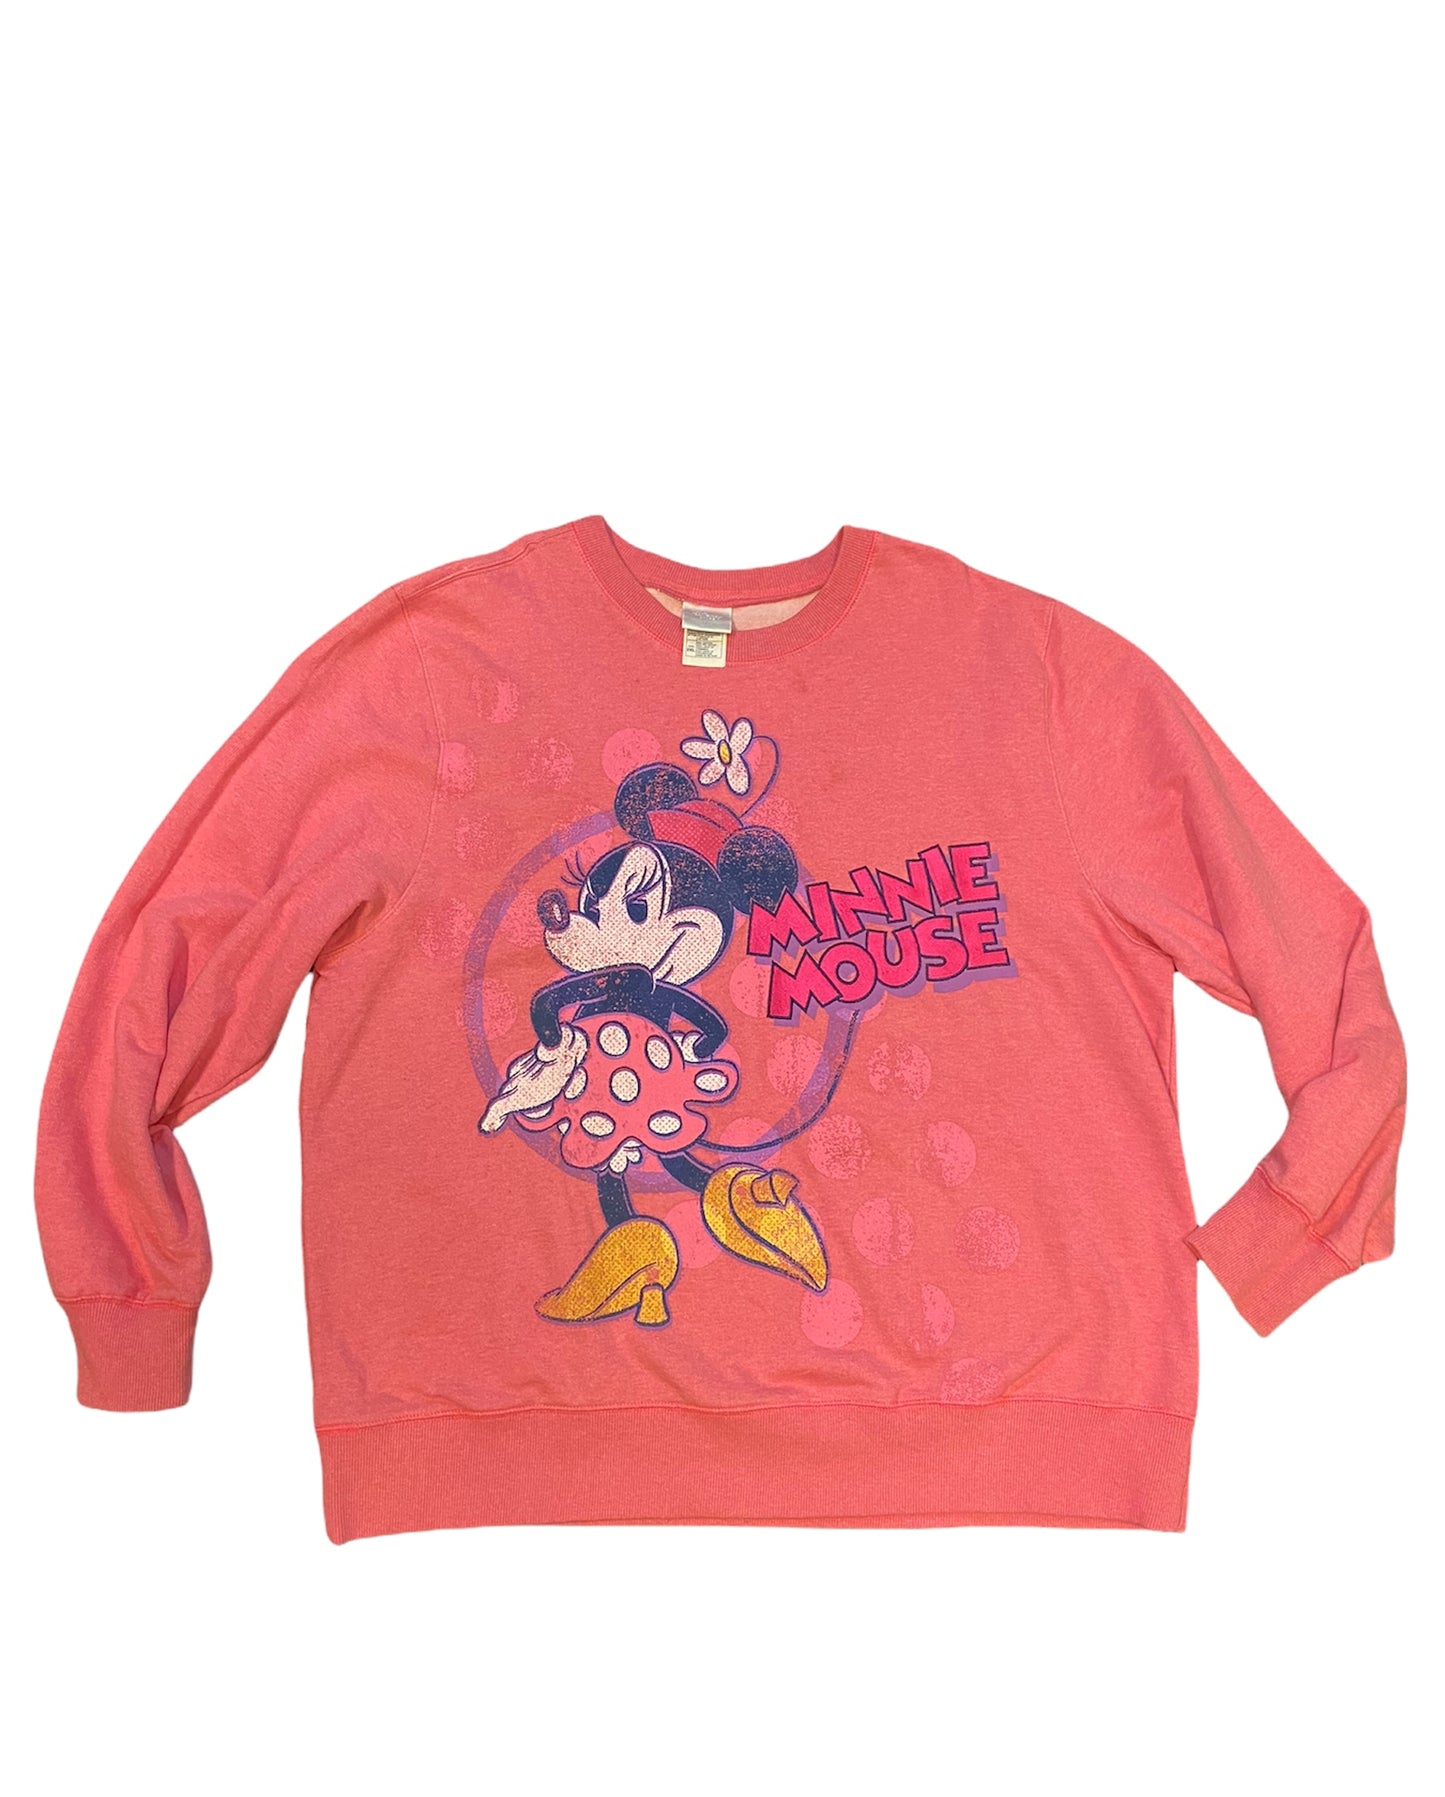 Vintage Minnie Mouse Sweatshirt